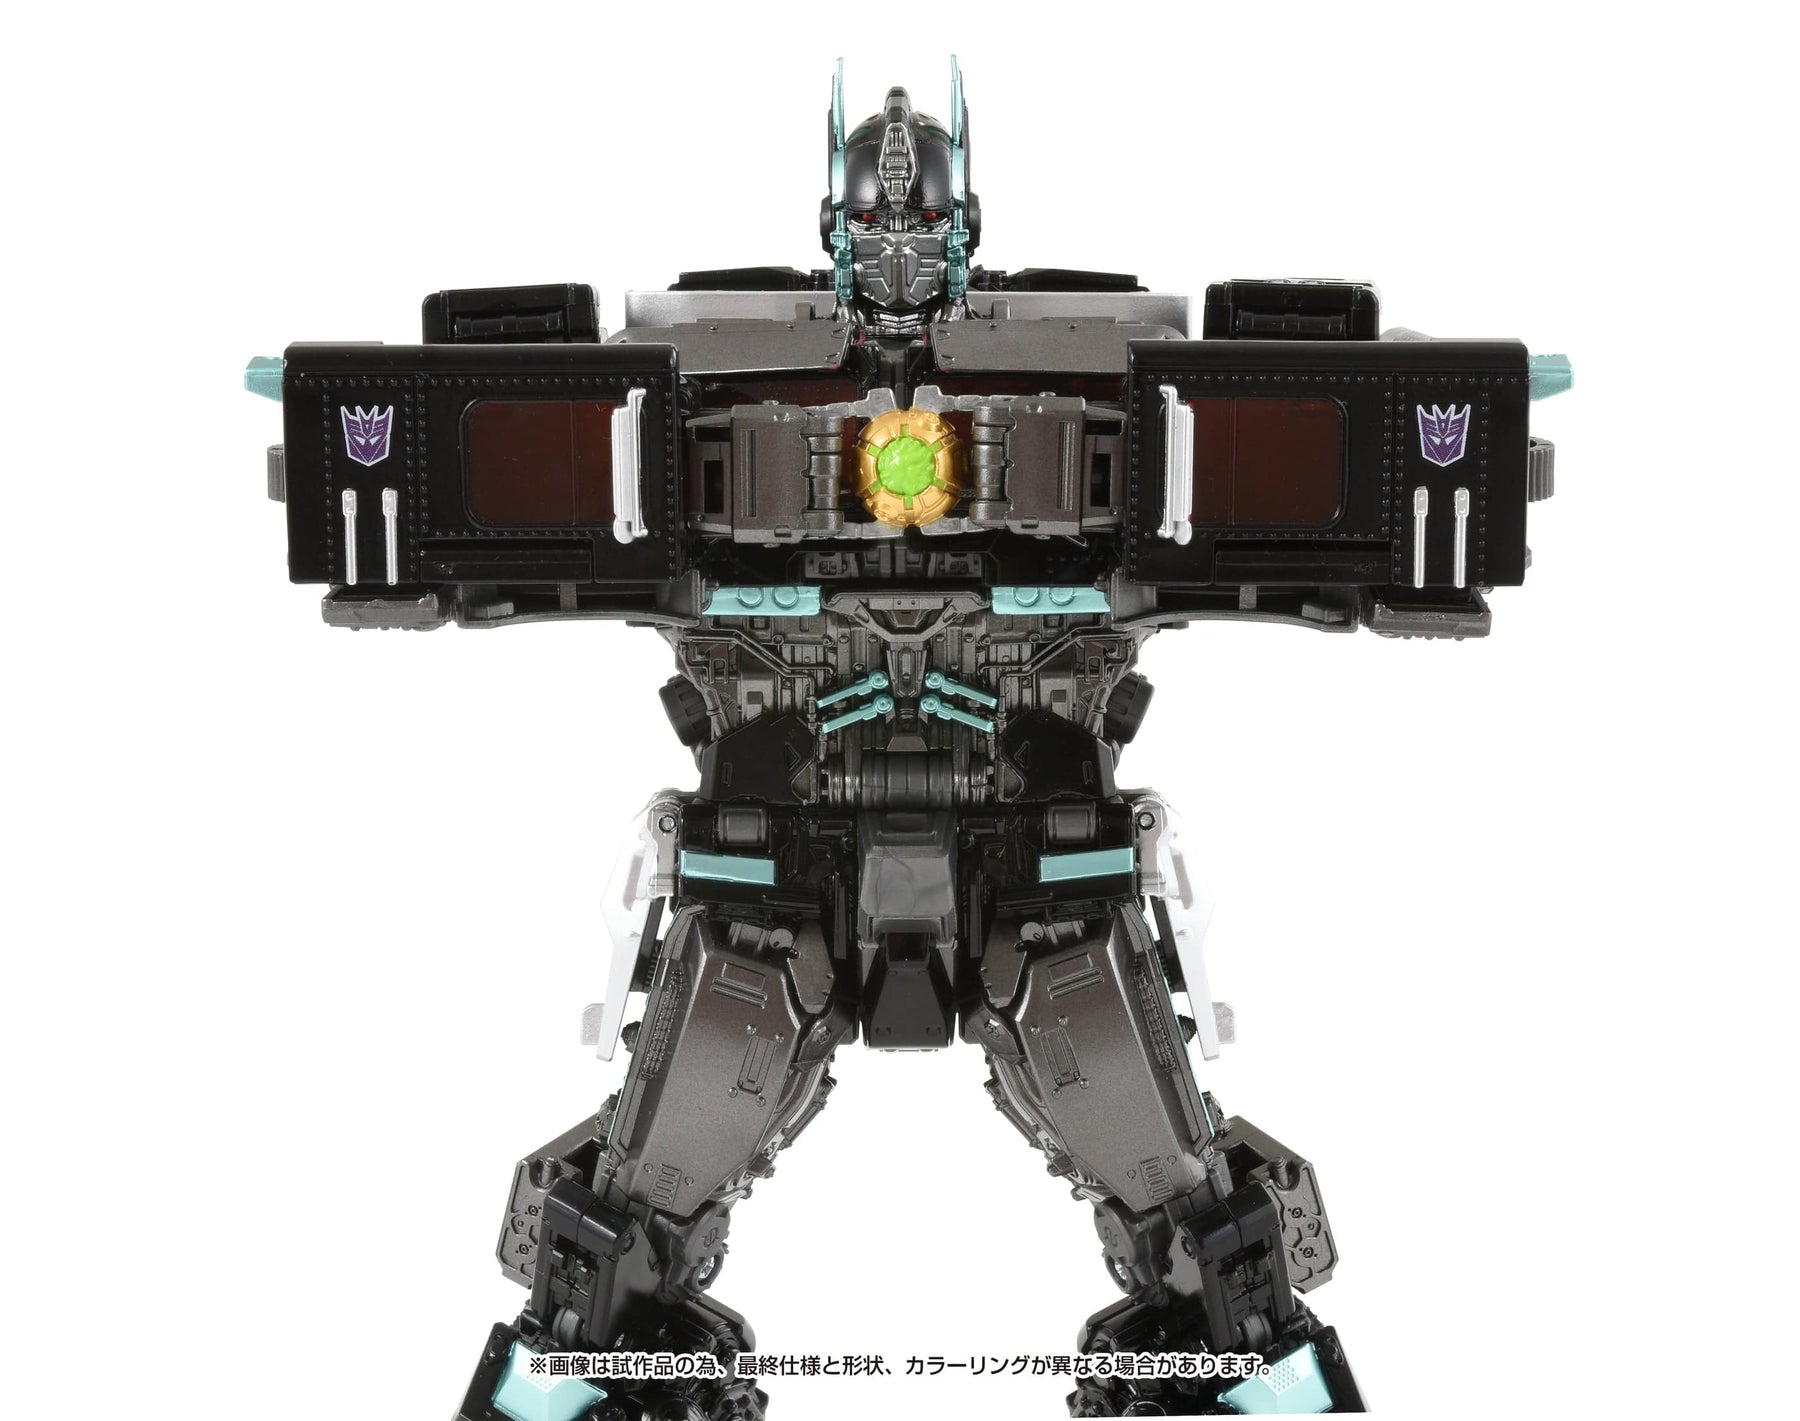 Hasbro: Transformers Masterpiece - Nemesis Prime